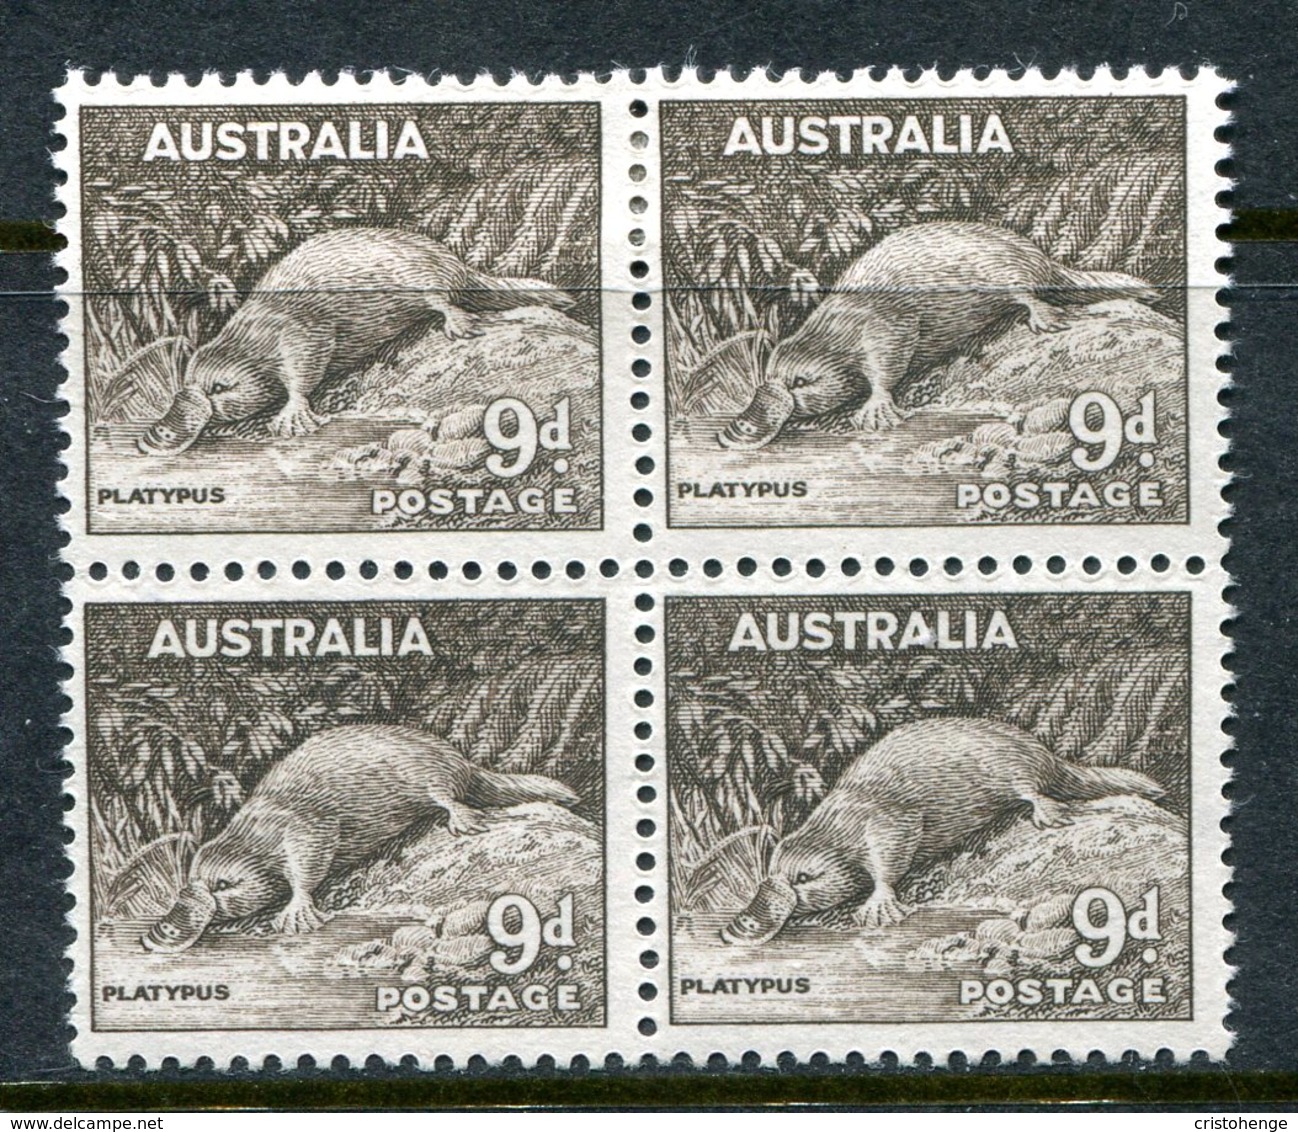 Australia 1948-56 Definitives - No. Wmk. - 9d Platypus Block Of 4 HM (SG 230c) - Mint Stamps